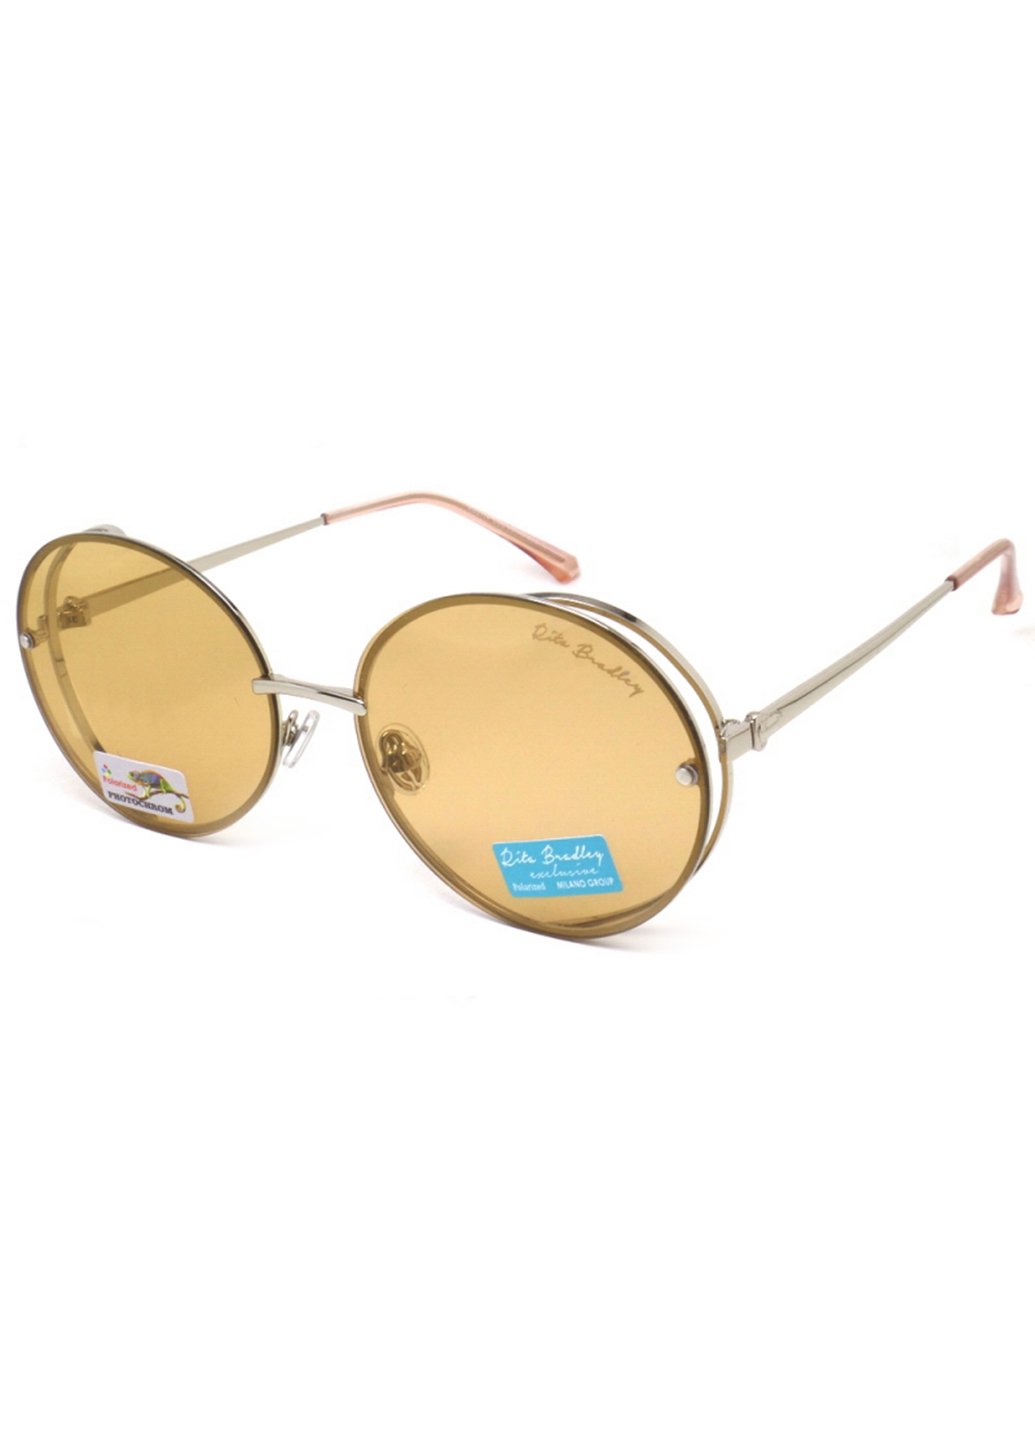 Купить Женские солнцезащитные очки Rita Bradley с поляризацией RB8114 112021 в интернет-магазине